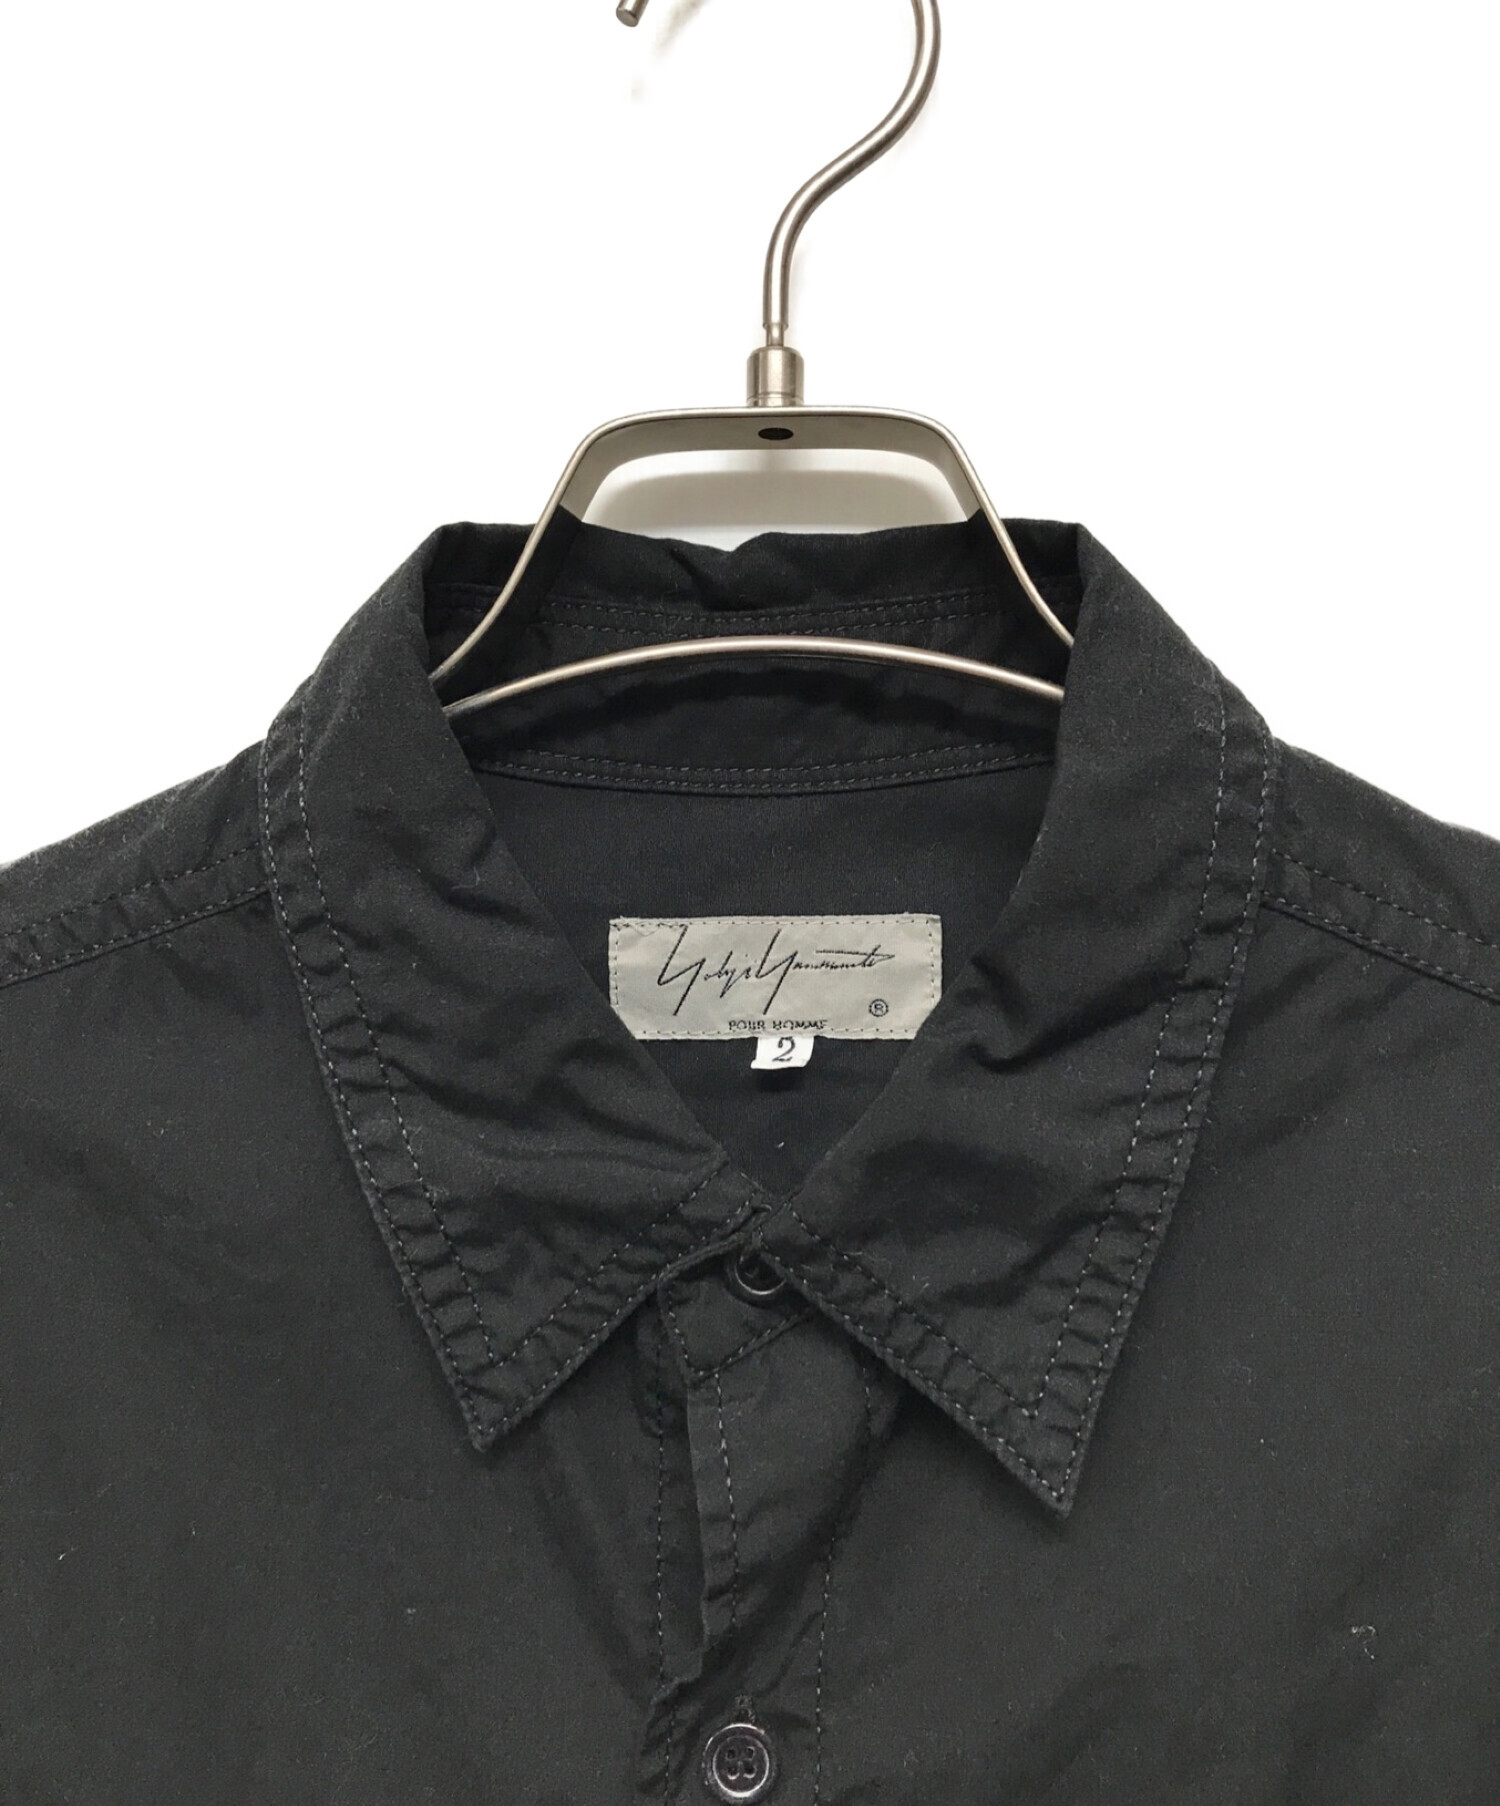 Yohji Yamamoto pour homme (ヨウジヤマモトプールオム) 環縫いコットンブロードシャツ ブラック サイズ:2